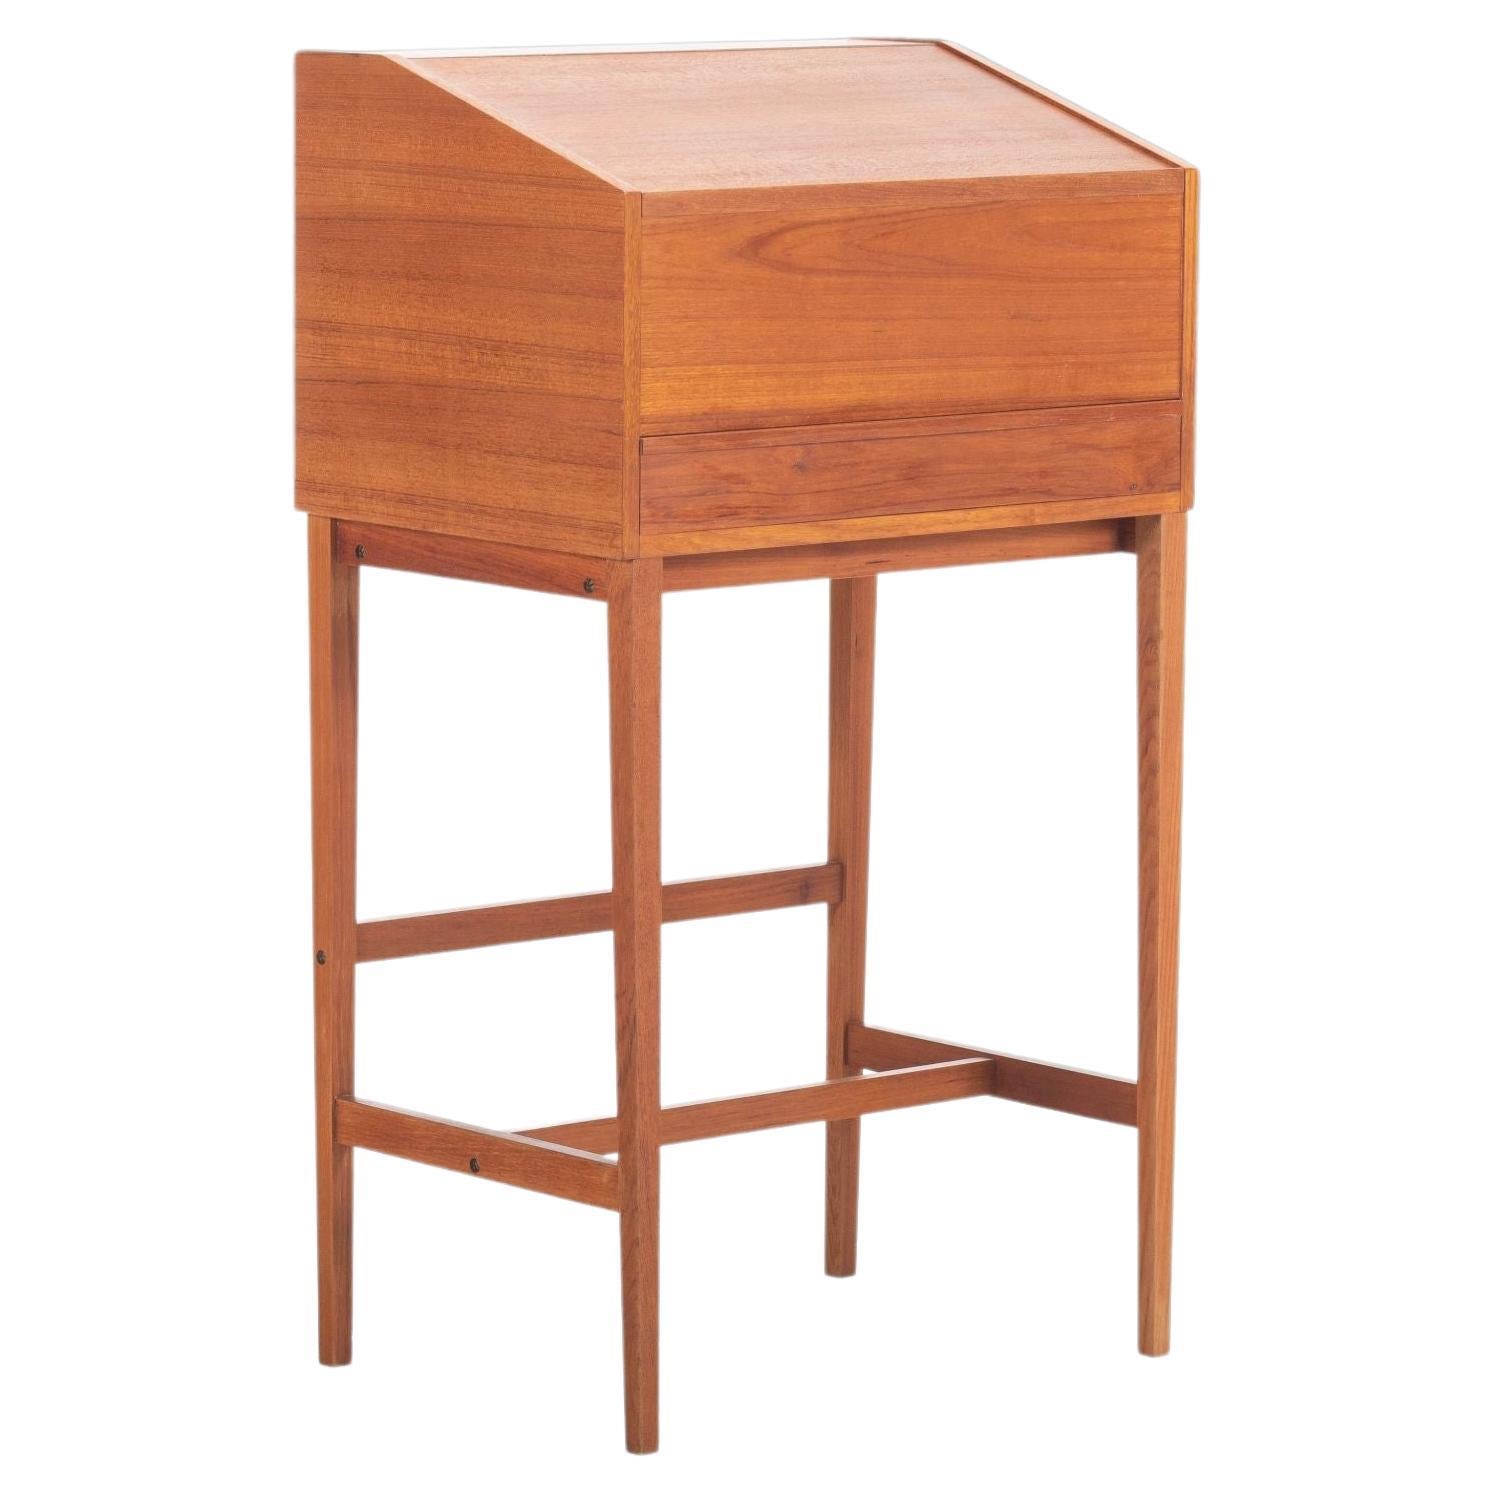 Danish Modern Drafting Table / Standing Desk, C. 1960s